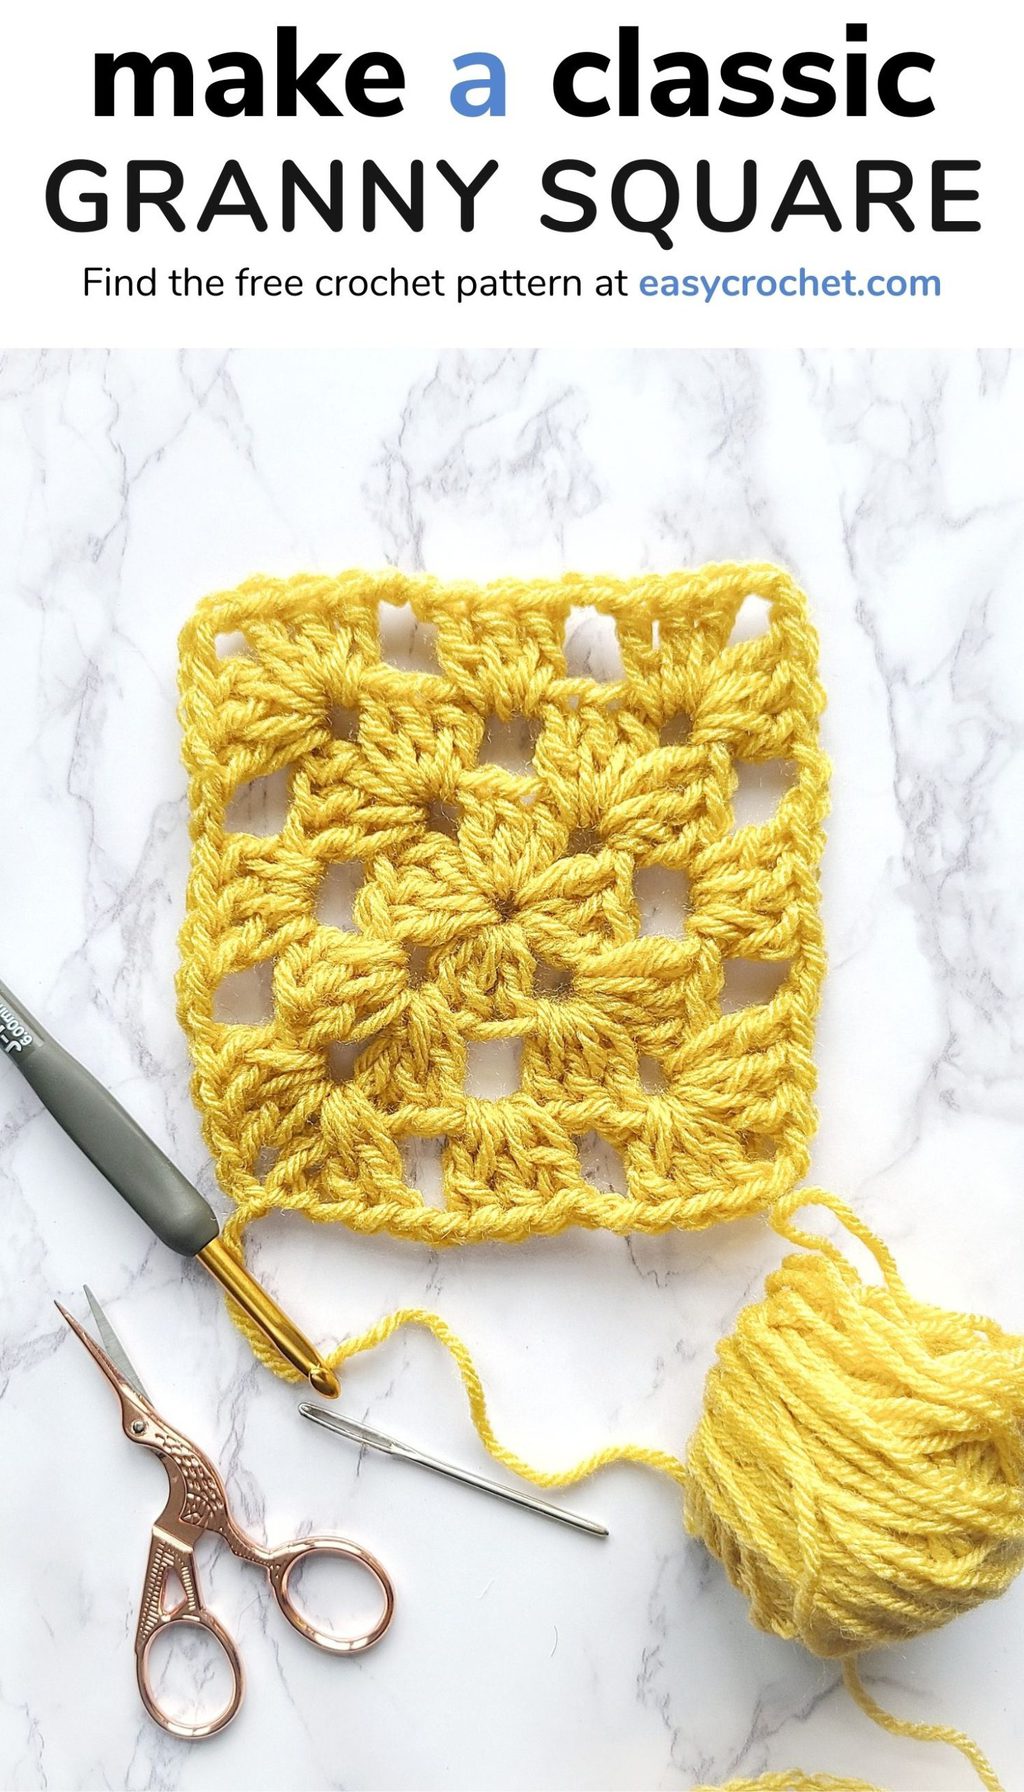 How to Crochet a Classic Granny Square for Beginners via @easycrochetcom